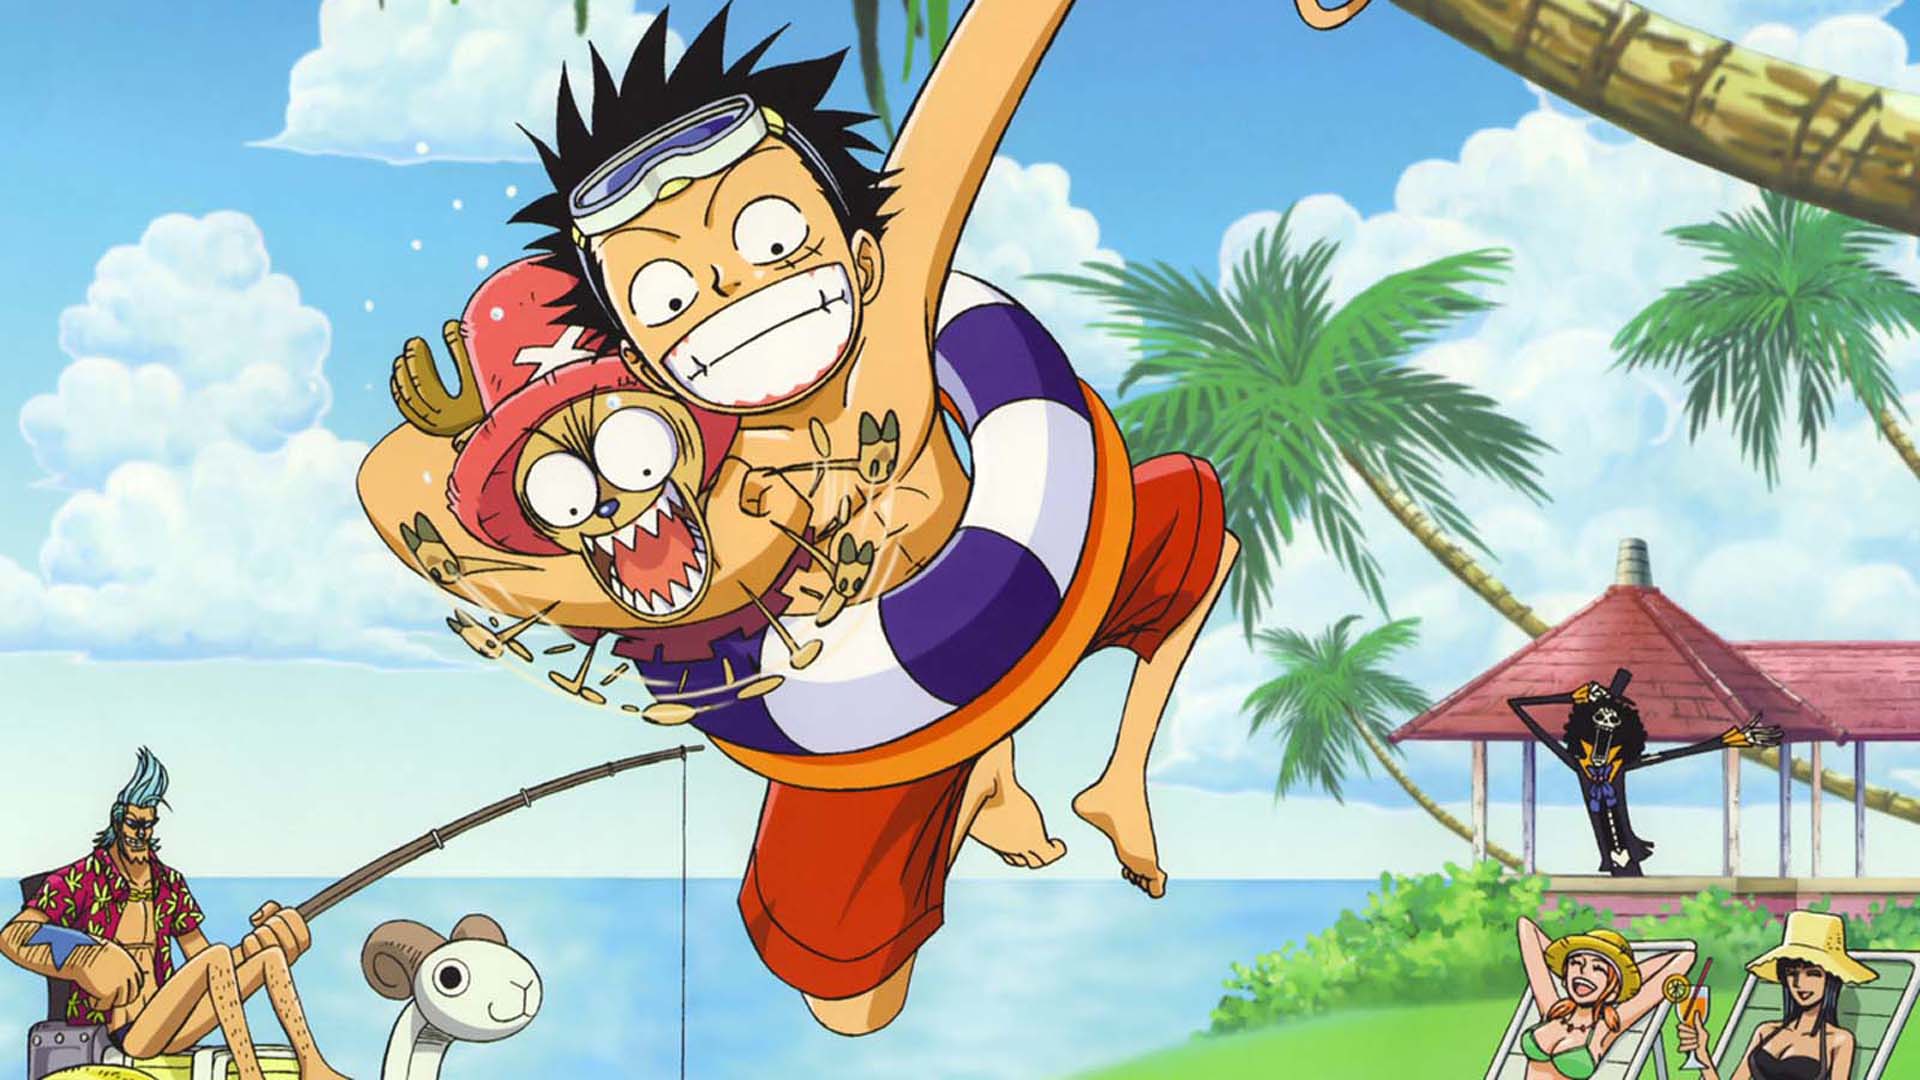 One Piece là bộ manga đình đám, khiến bao trái tim trẻ tuổi mê mẩn. Bộ hình nền One Piece độ phân giải 1920x1080 sẽ làm hài lòng những fan hâm mộ trung thành với Luffy và các chiến hữu.